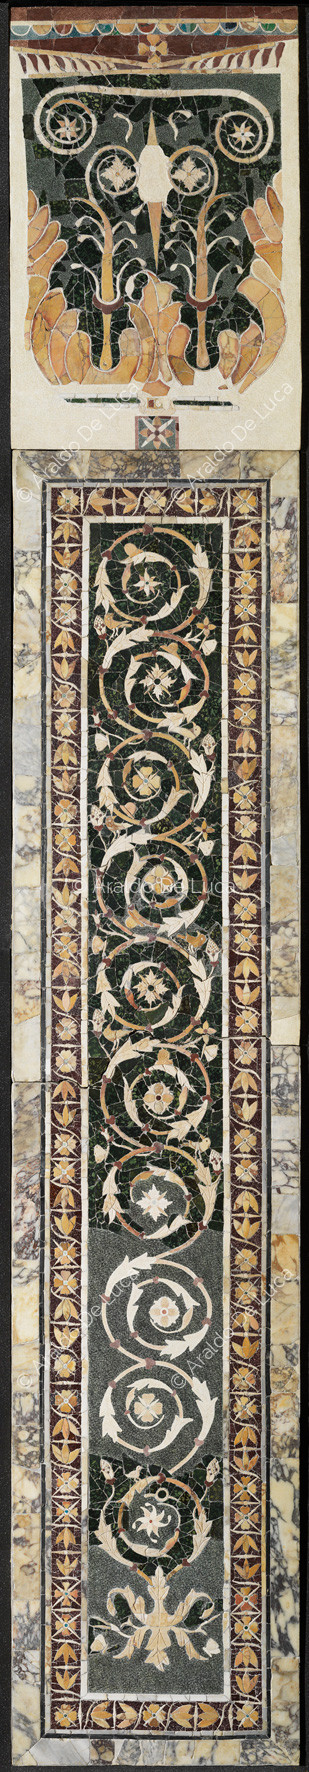 Lesena con tralcio floreale e bordo a fiori di loto - Opus Sectile di Porta Marina, particolare